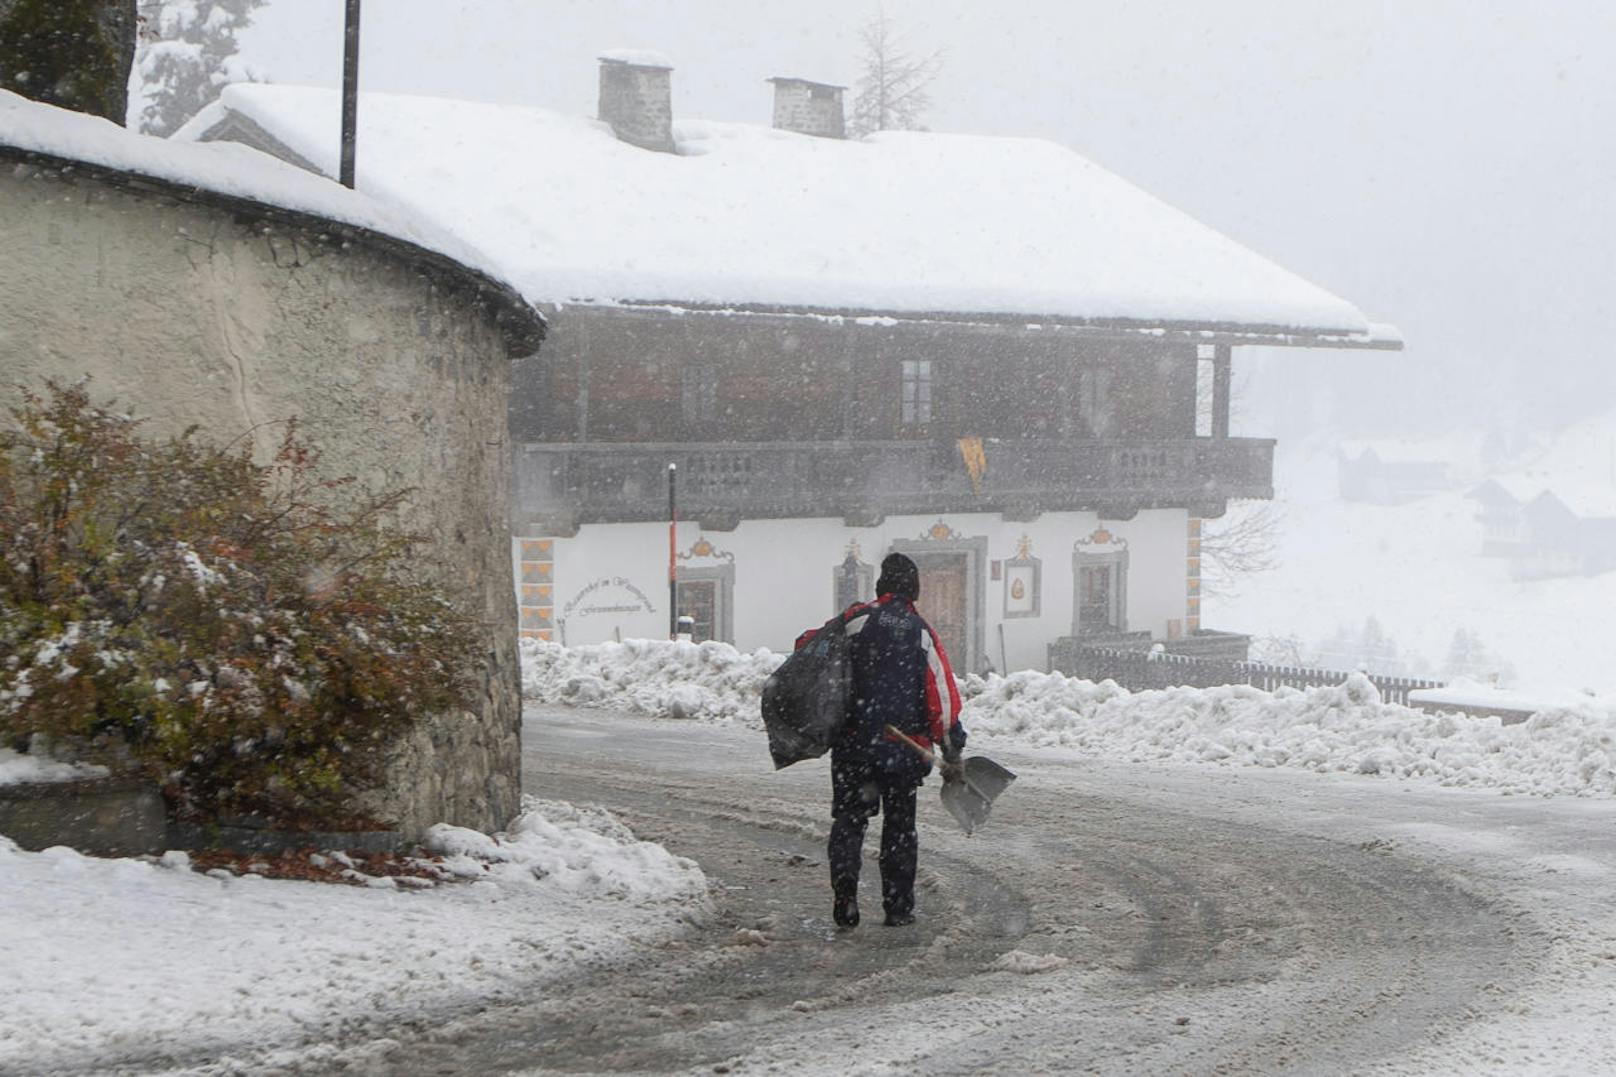 Bereits am Dienstag lagen Osttirol und Kärnten unter einer Schneedecke. Im Bild: Maria Luggau.